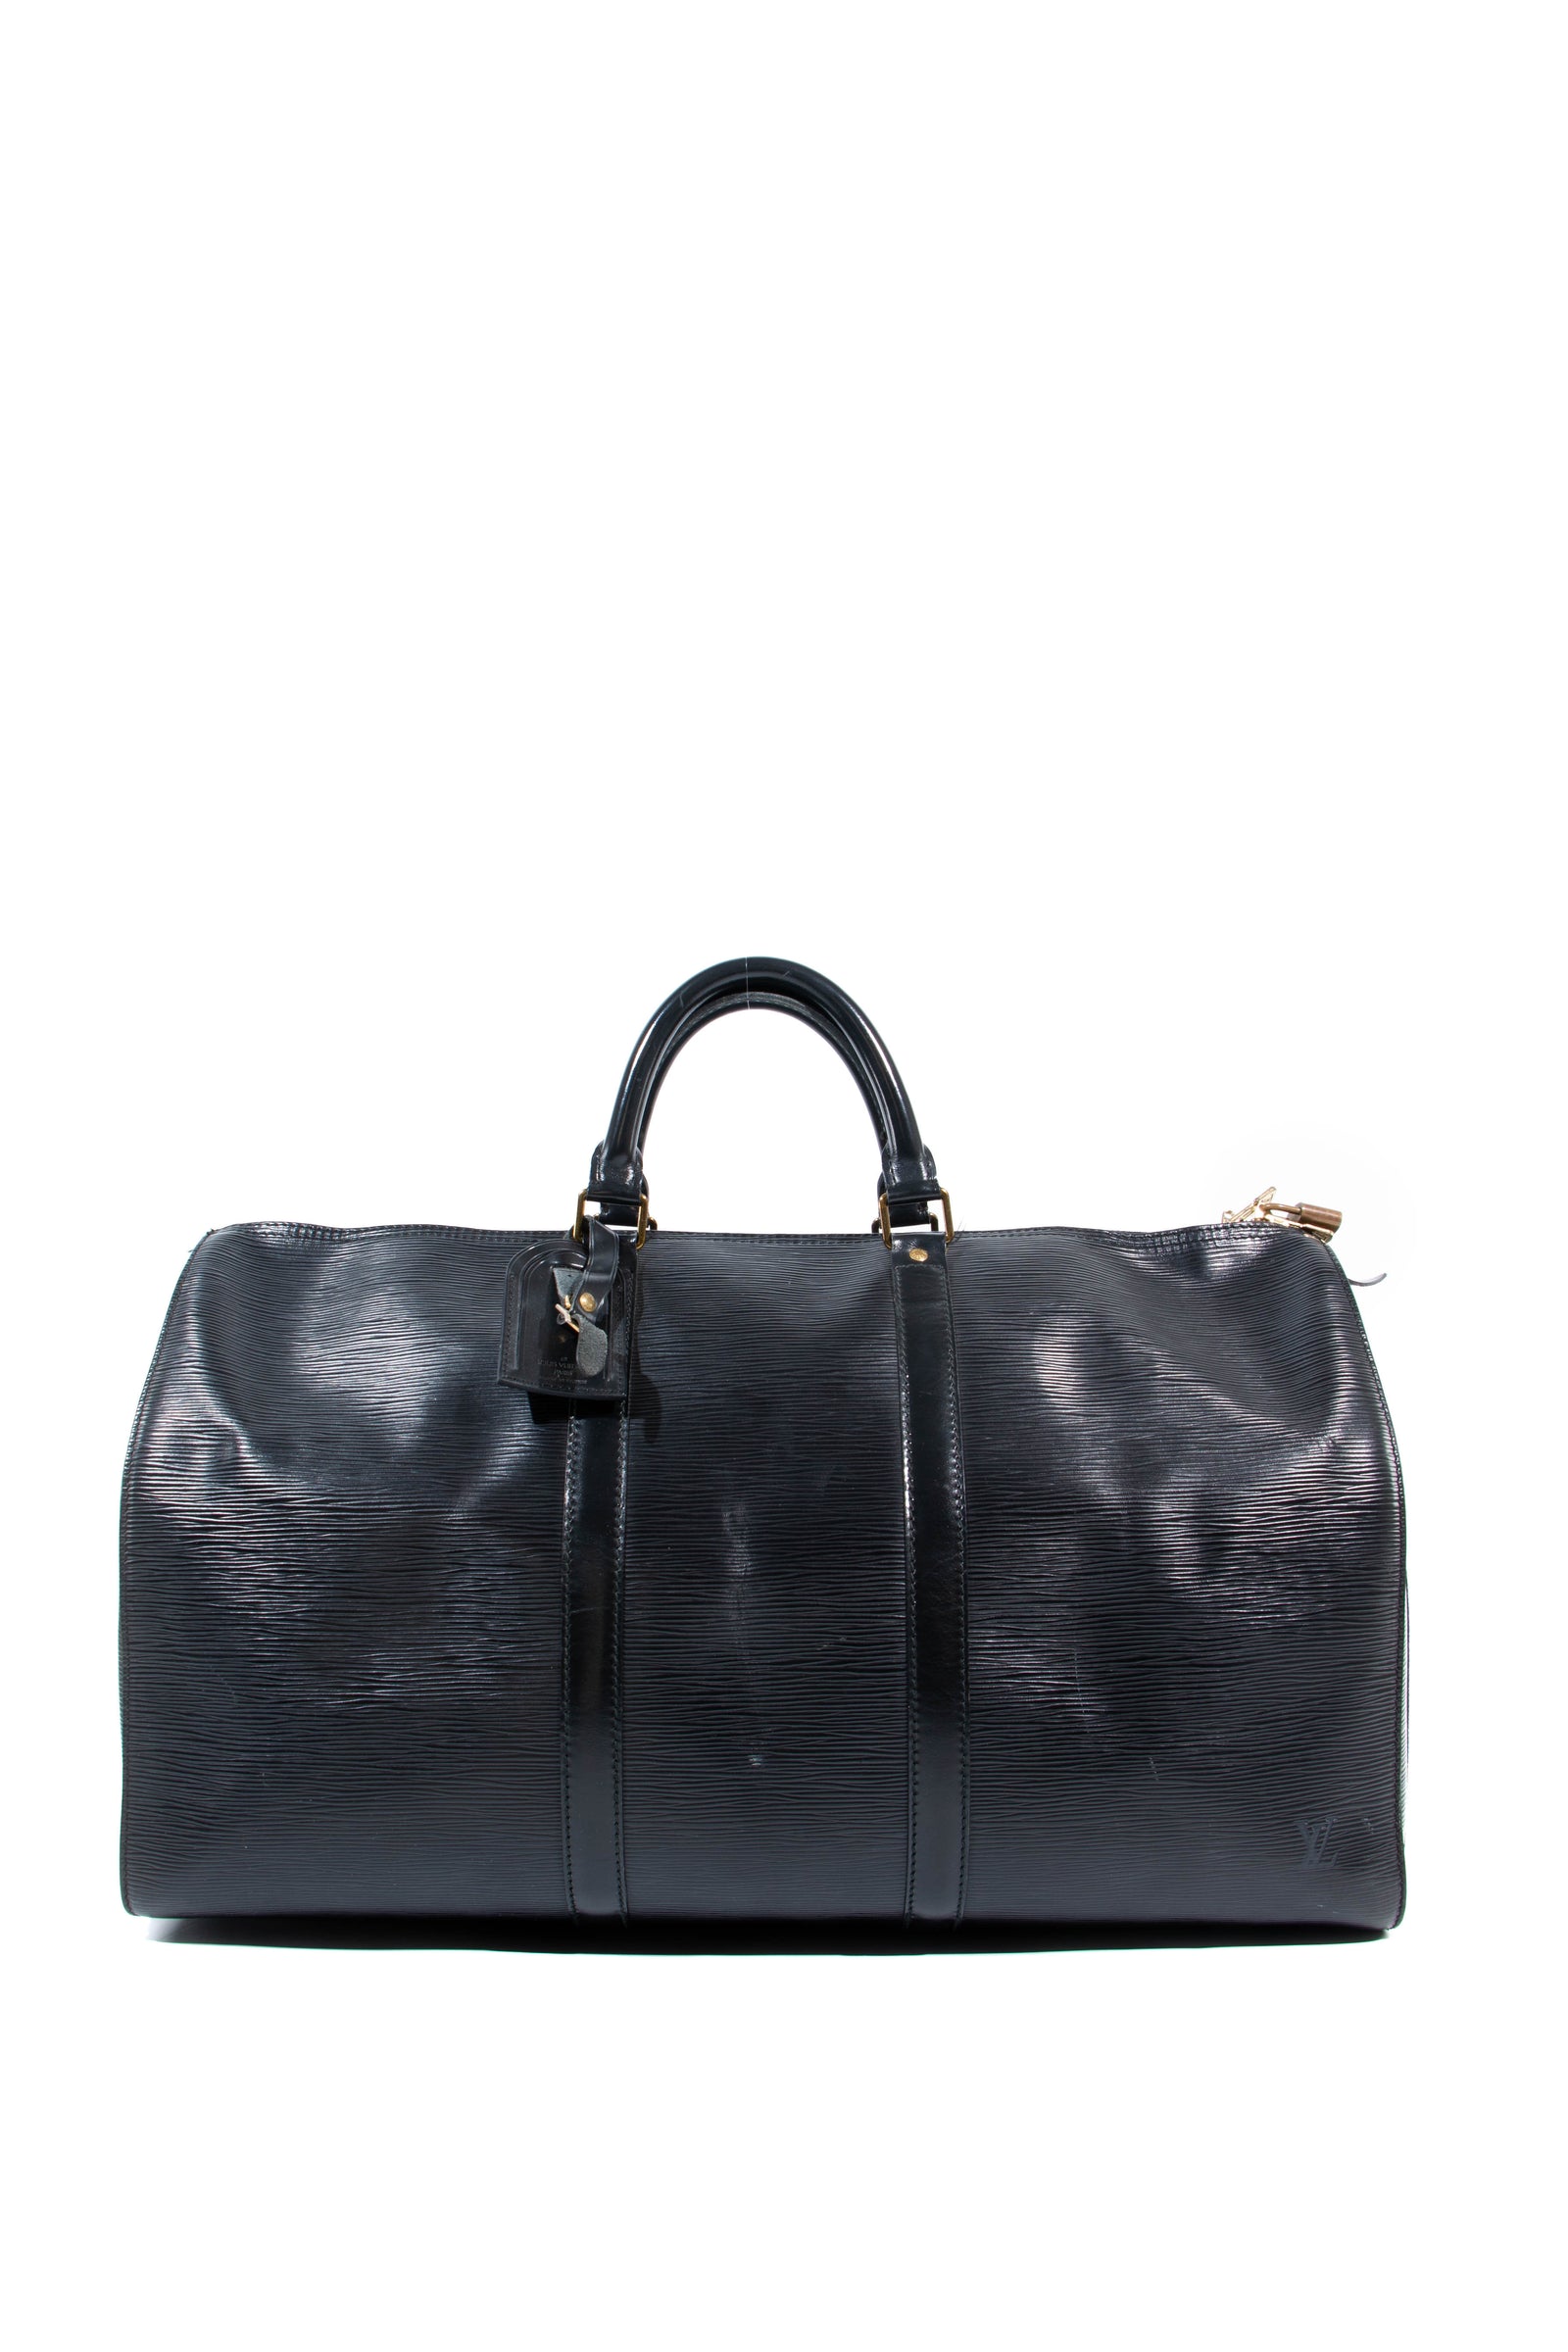 At Auction: Louis Vuitton, Louis Vuitton - City Keepall Bag Trunk L'oeil  Calf Leather Cream Shoulder Bag